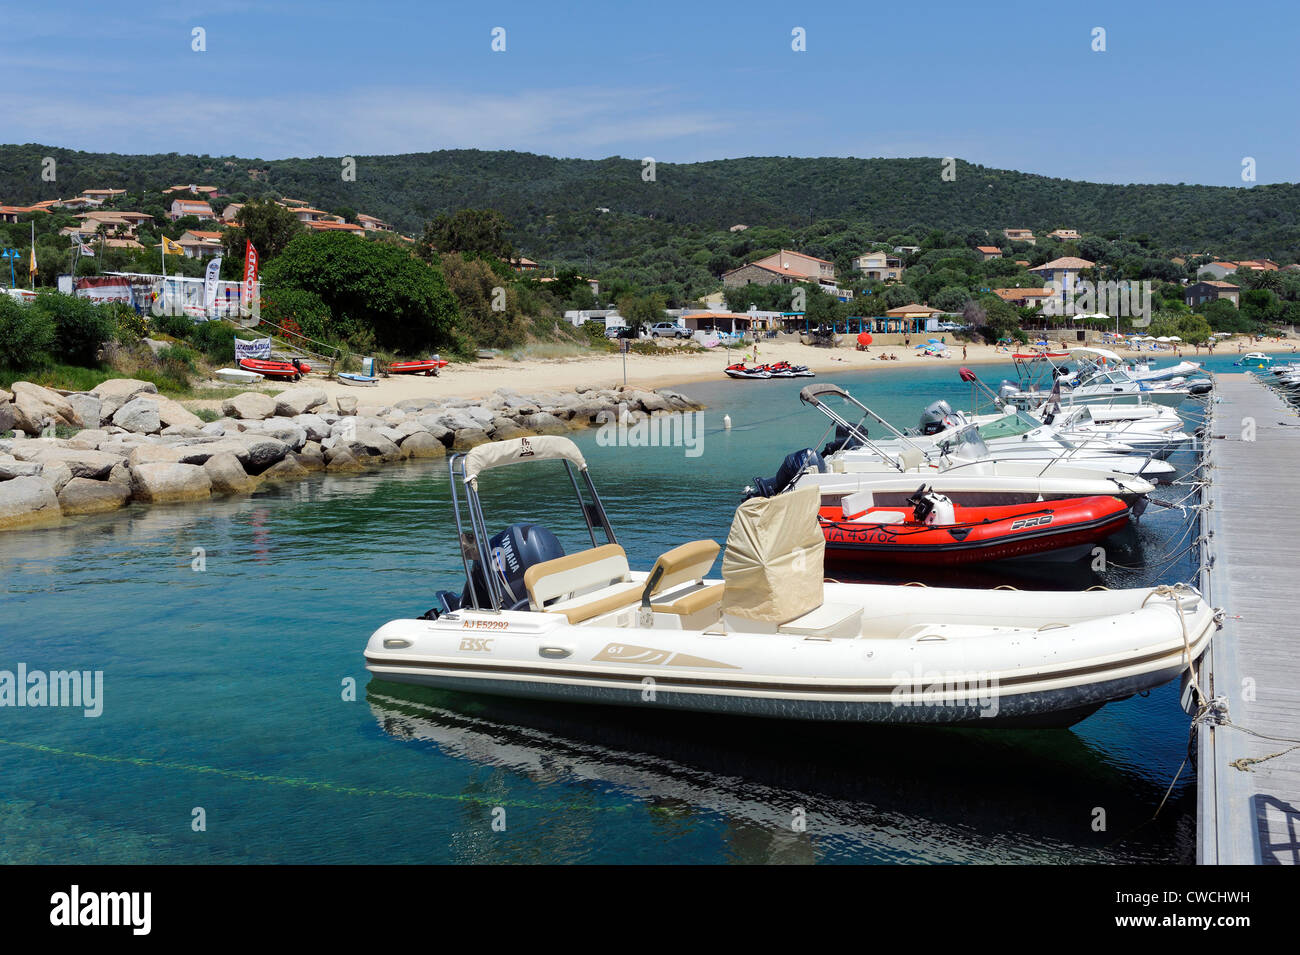 Port of Porto Pollo, Corsica, France Stock Photo